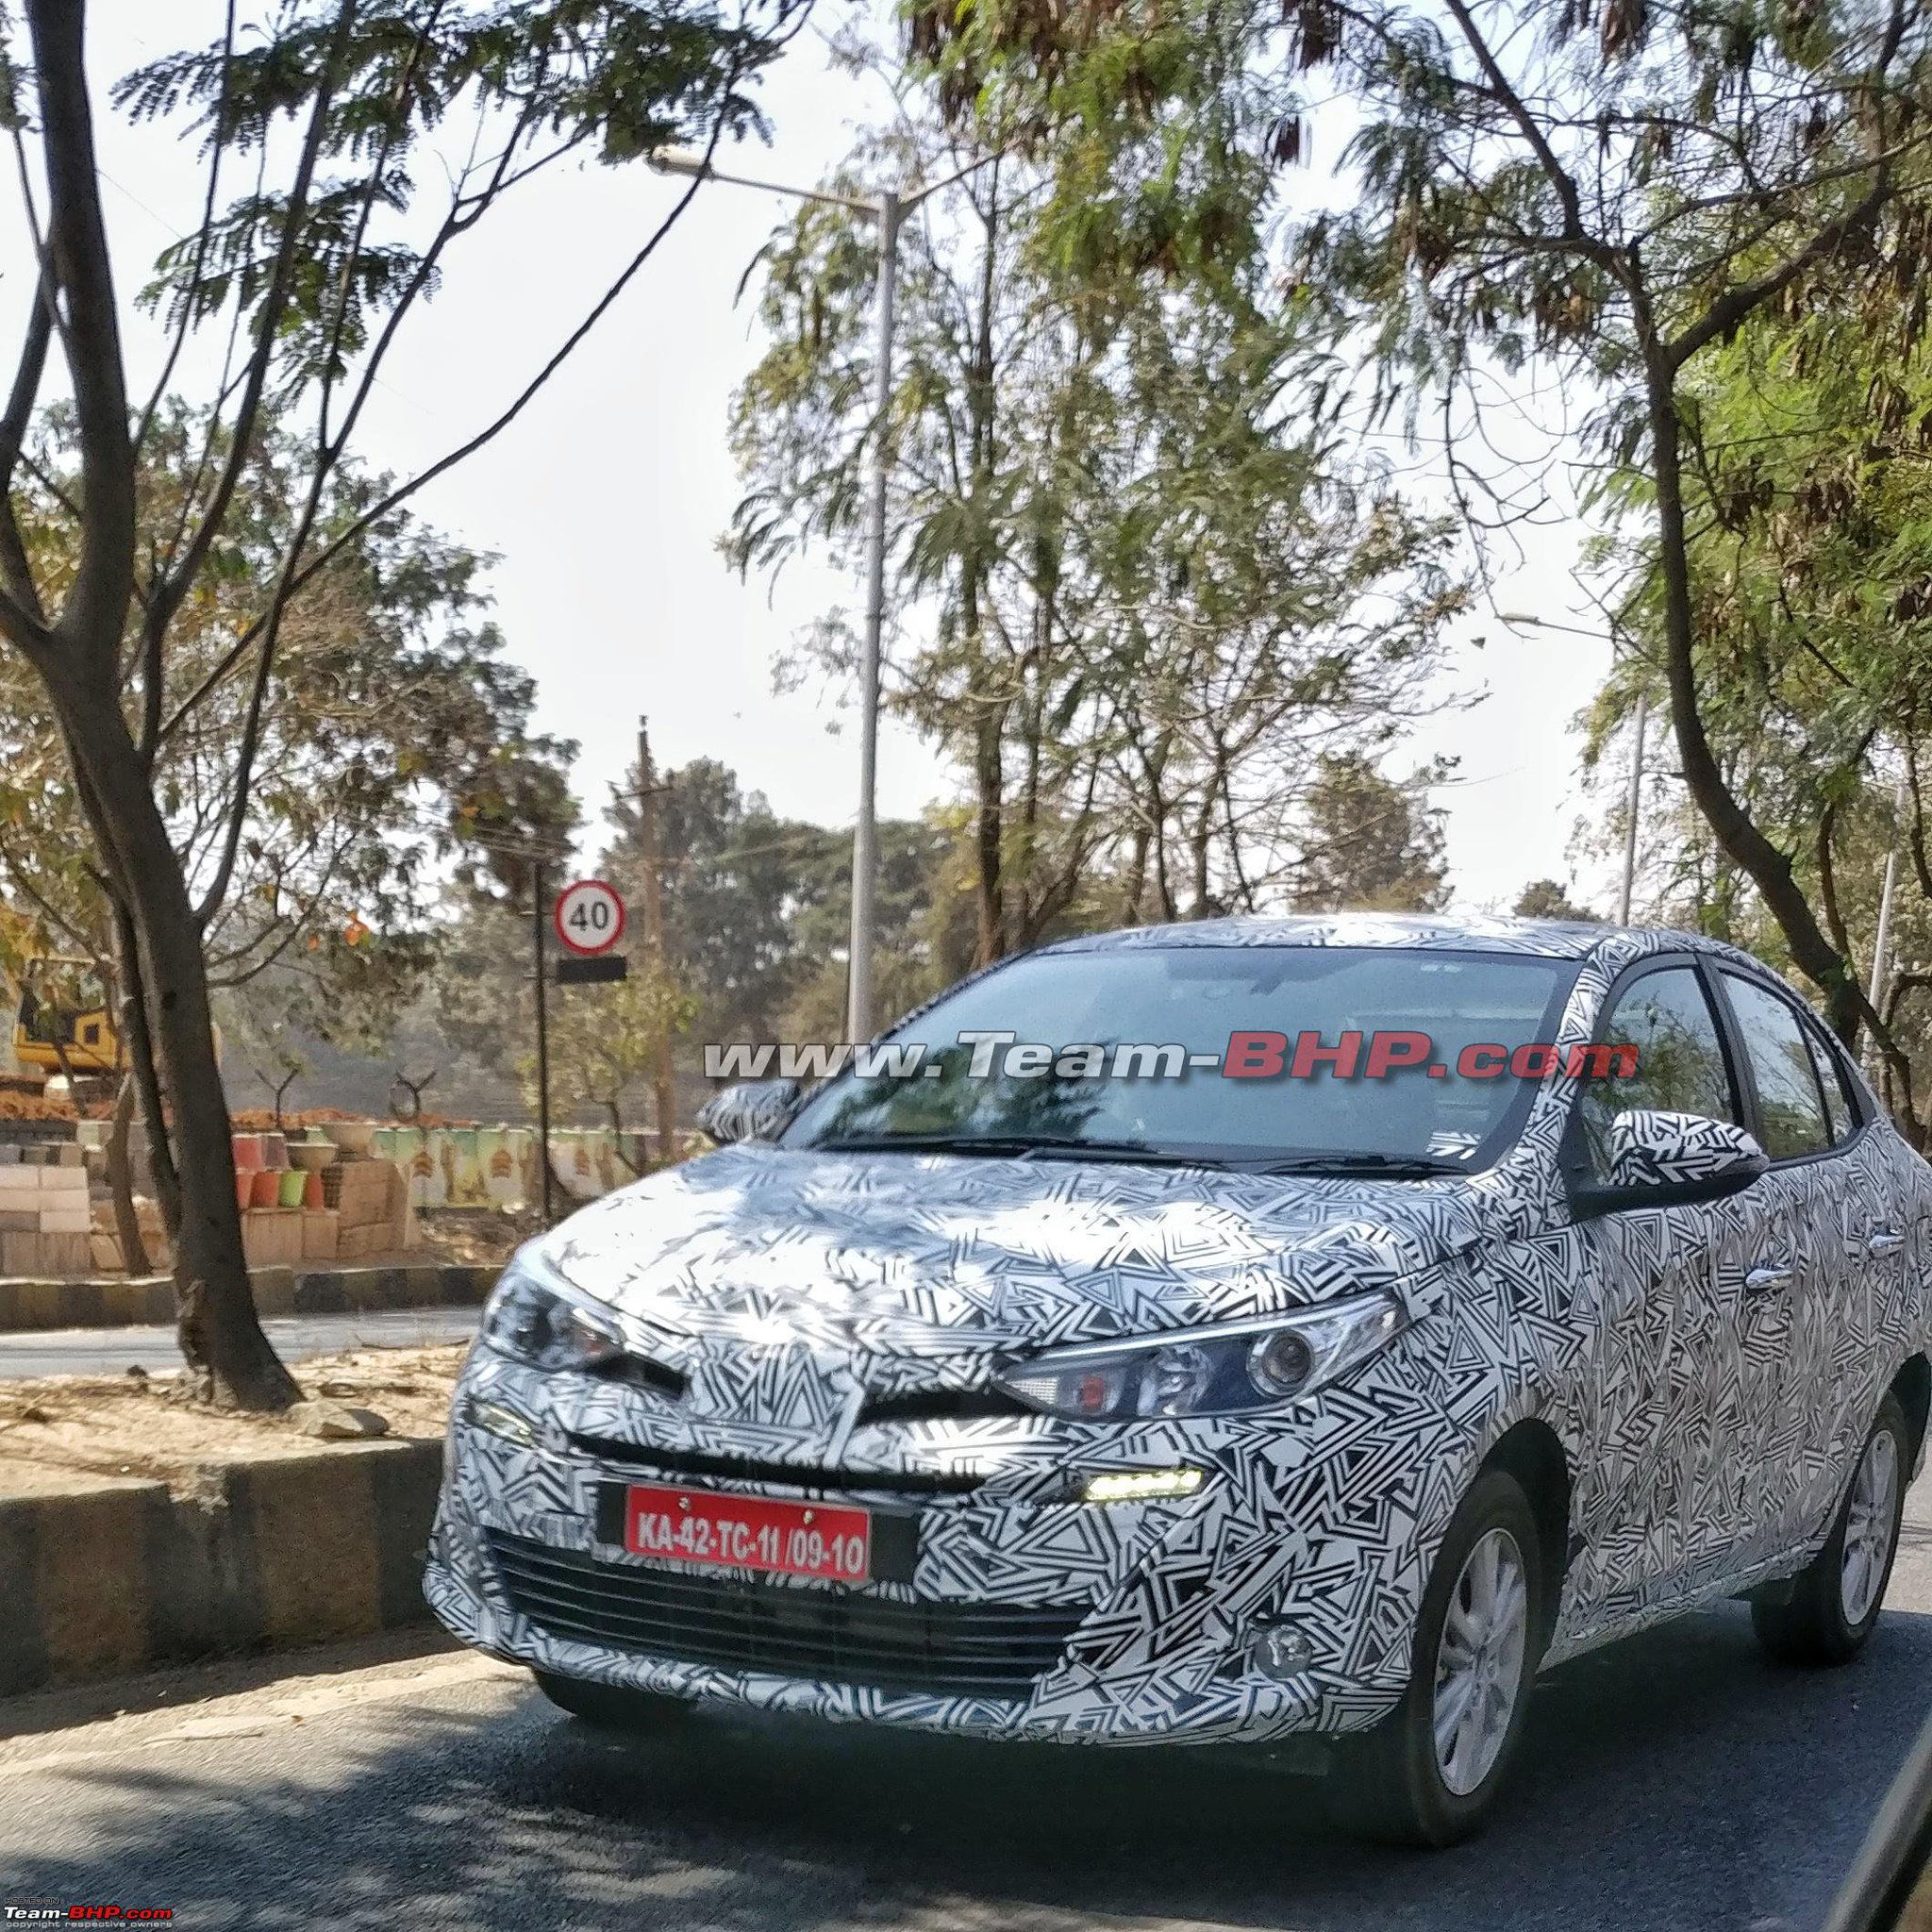 Team Bhp On Twitter Scoop Toyota Yaris Ativ Sedan Spotted